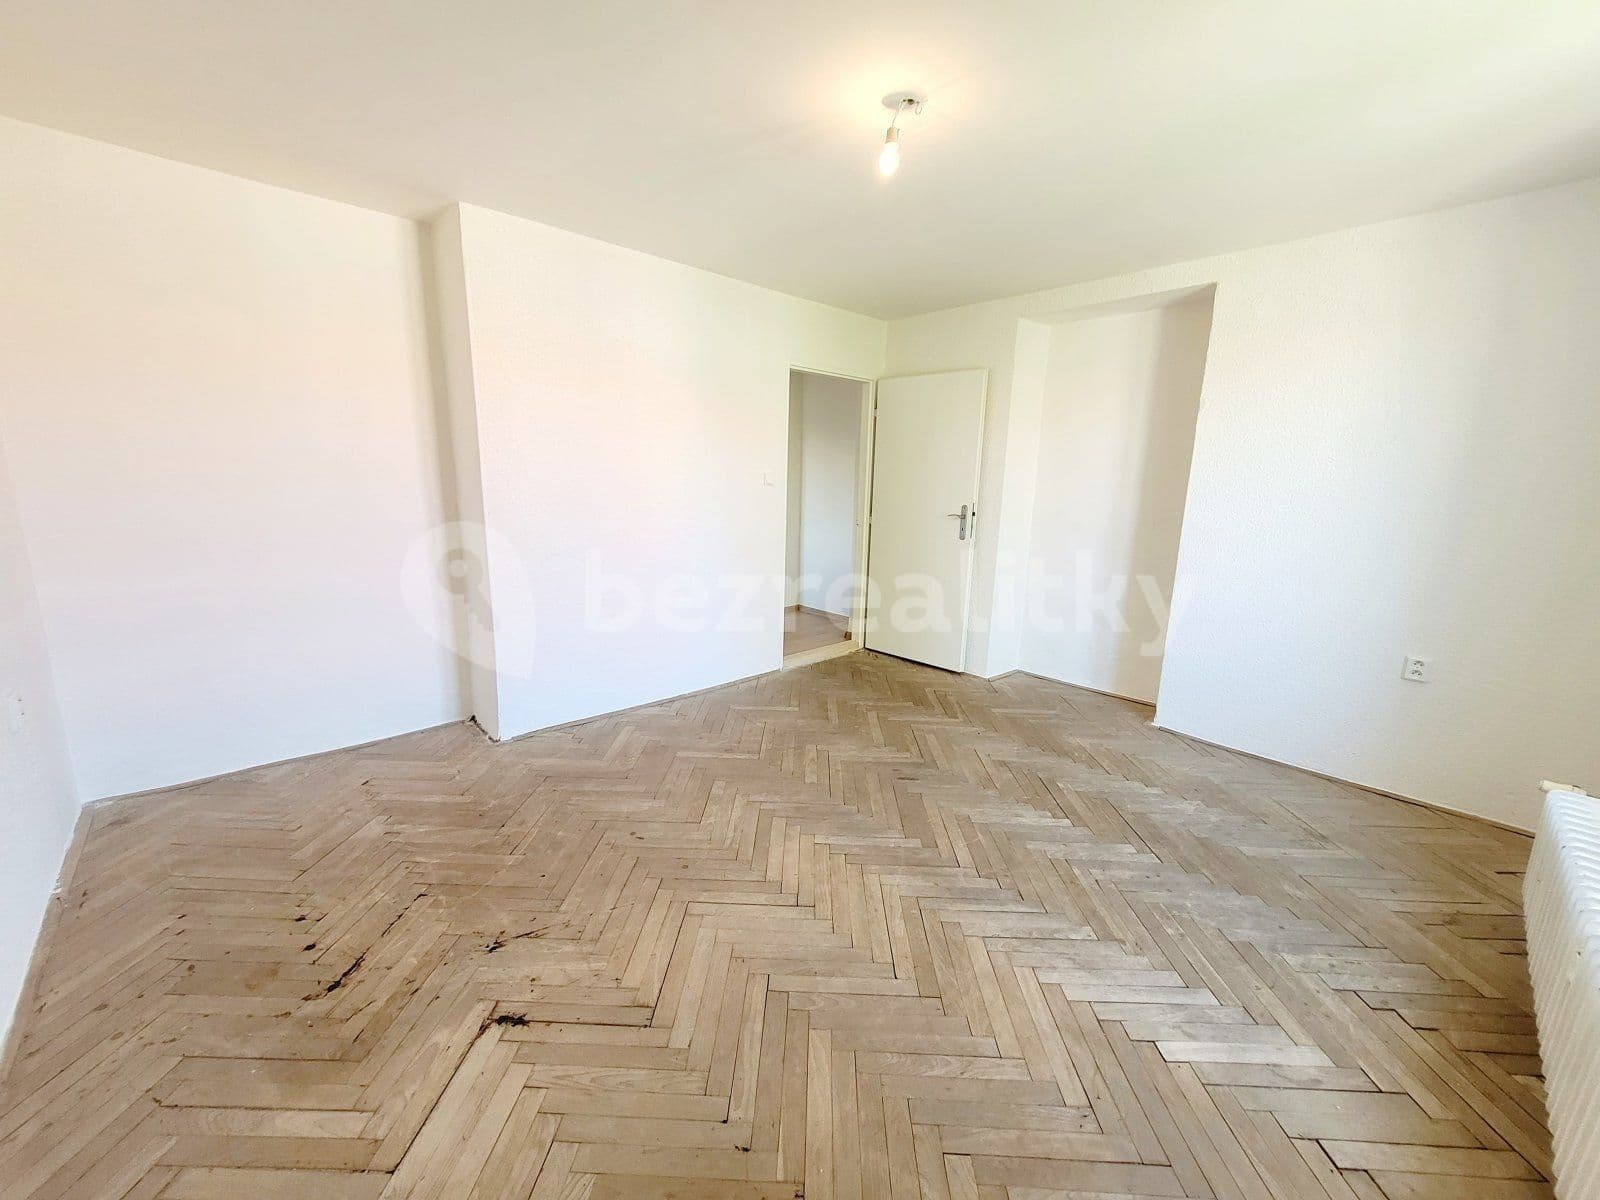 2 bedroom flat to rent, 64 m², Odboje, Havířov, Moravskoslezský Region